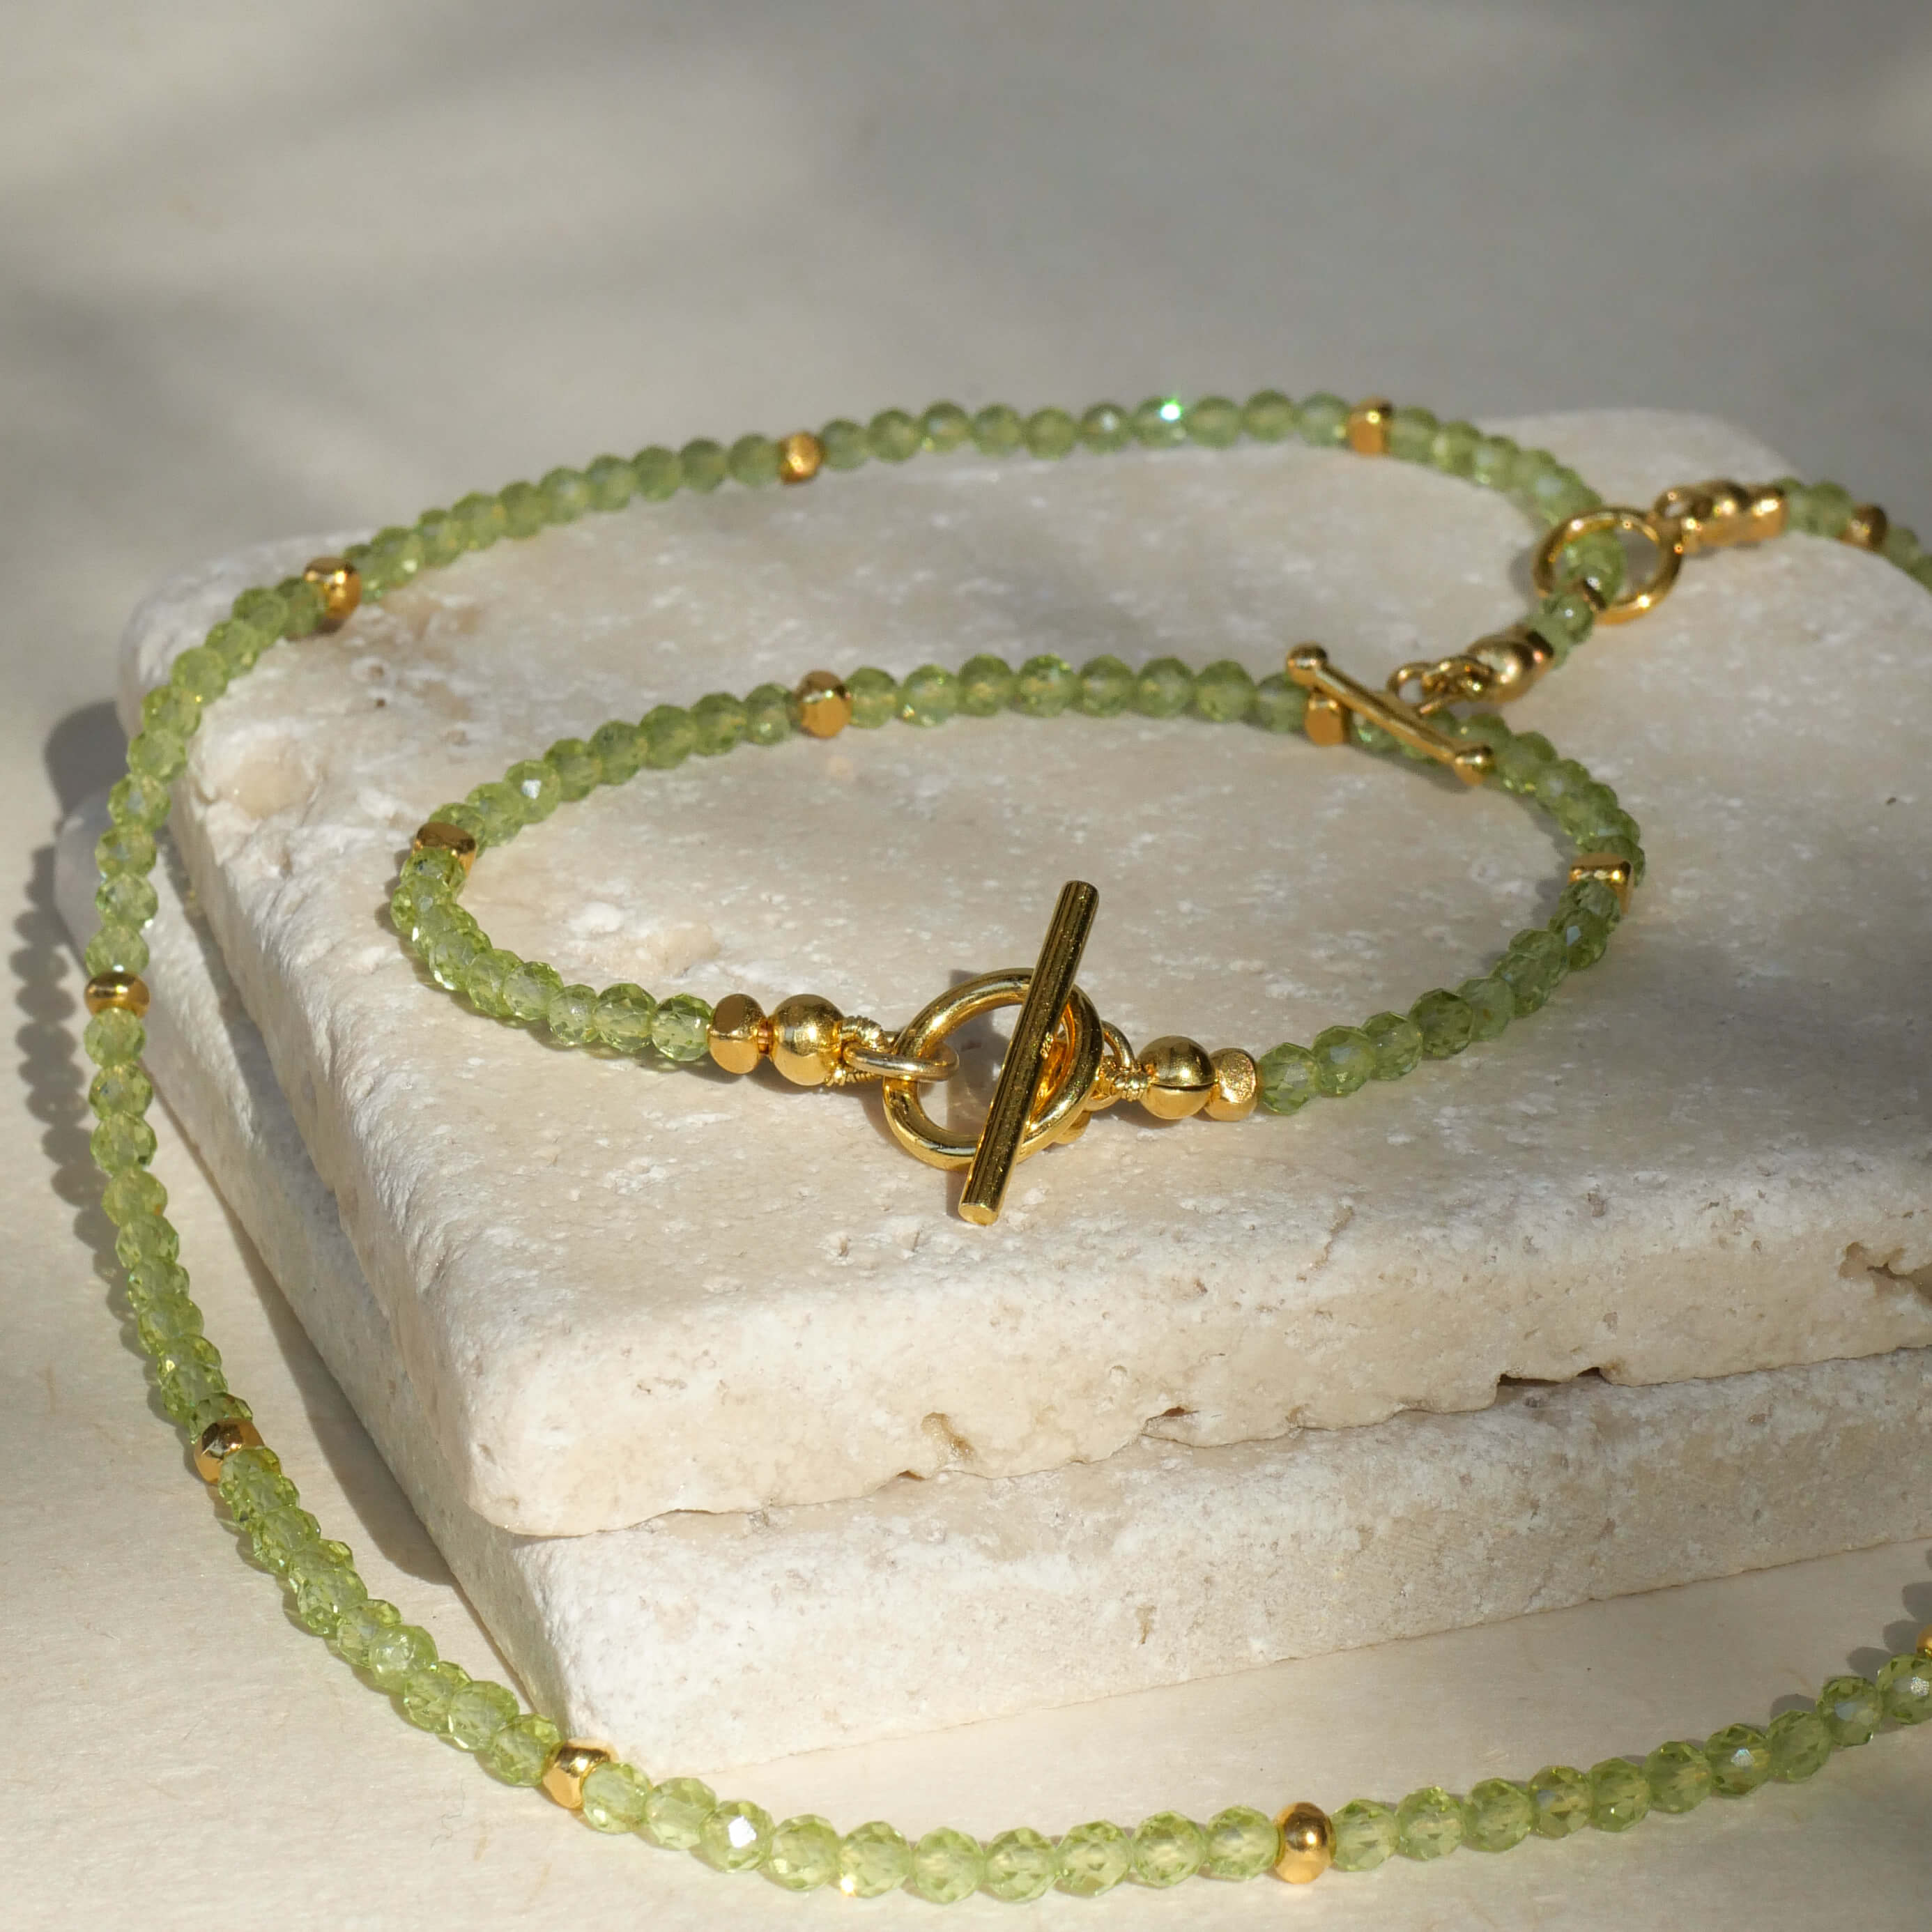 Edles Armband Maya aus apfelgrünem Peridot mit vergoldeten Elementen aus 925er Silber auch als Kette Maya erhältlich- True Nuggets of love